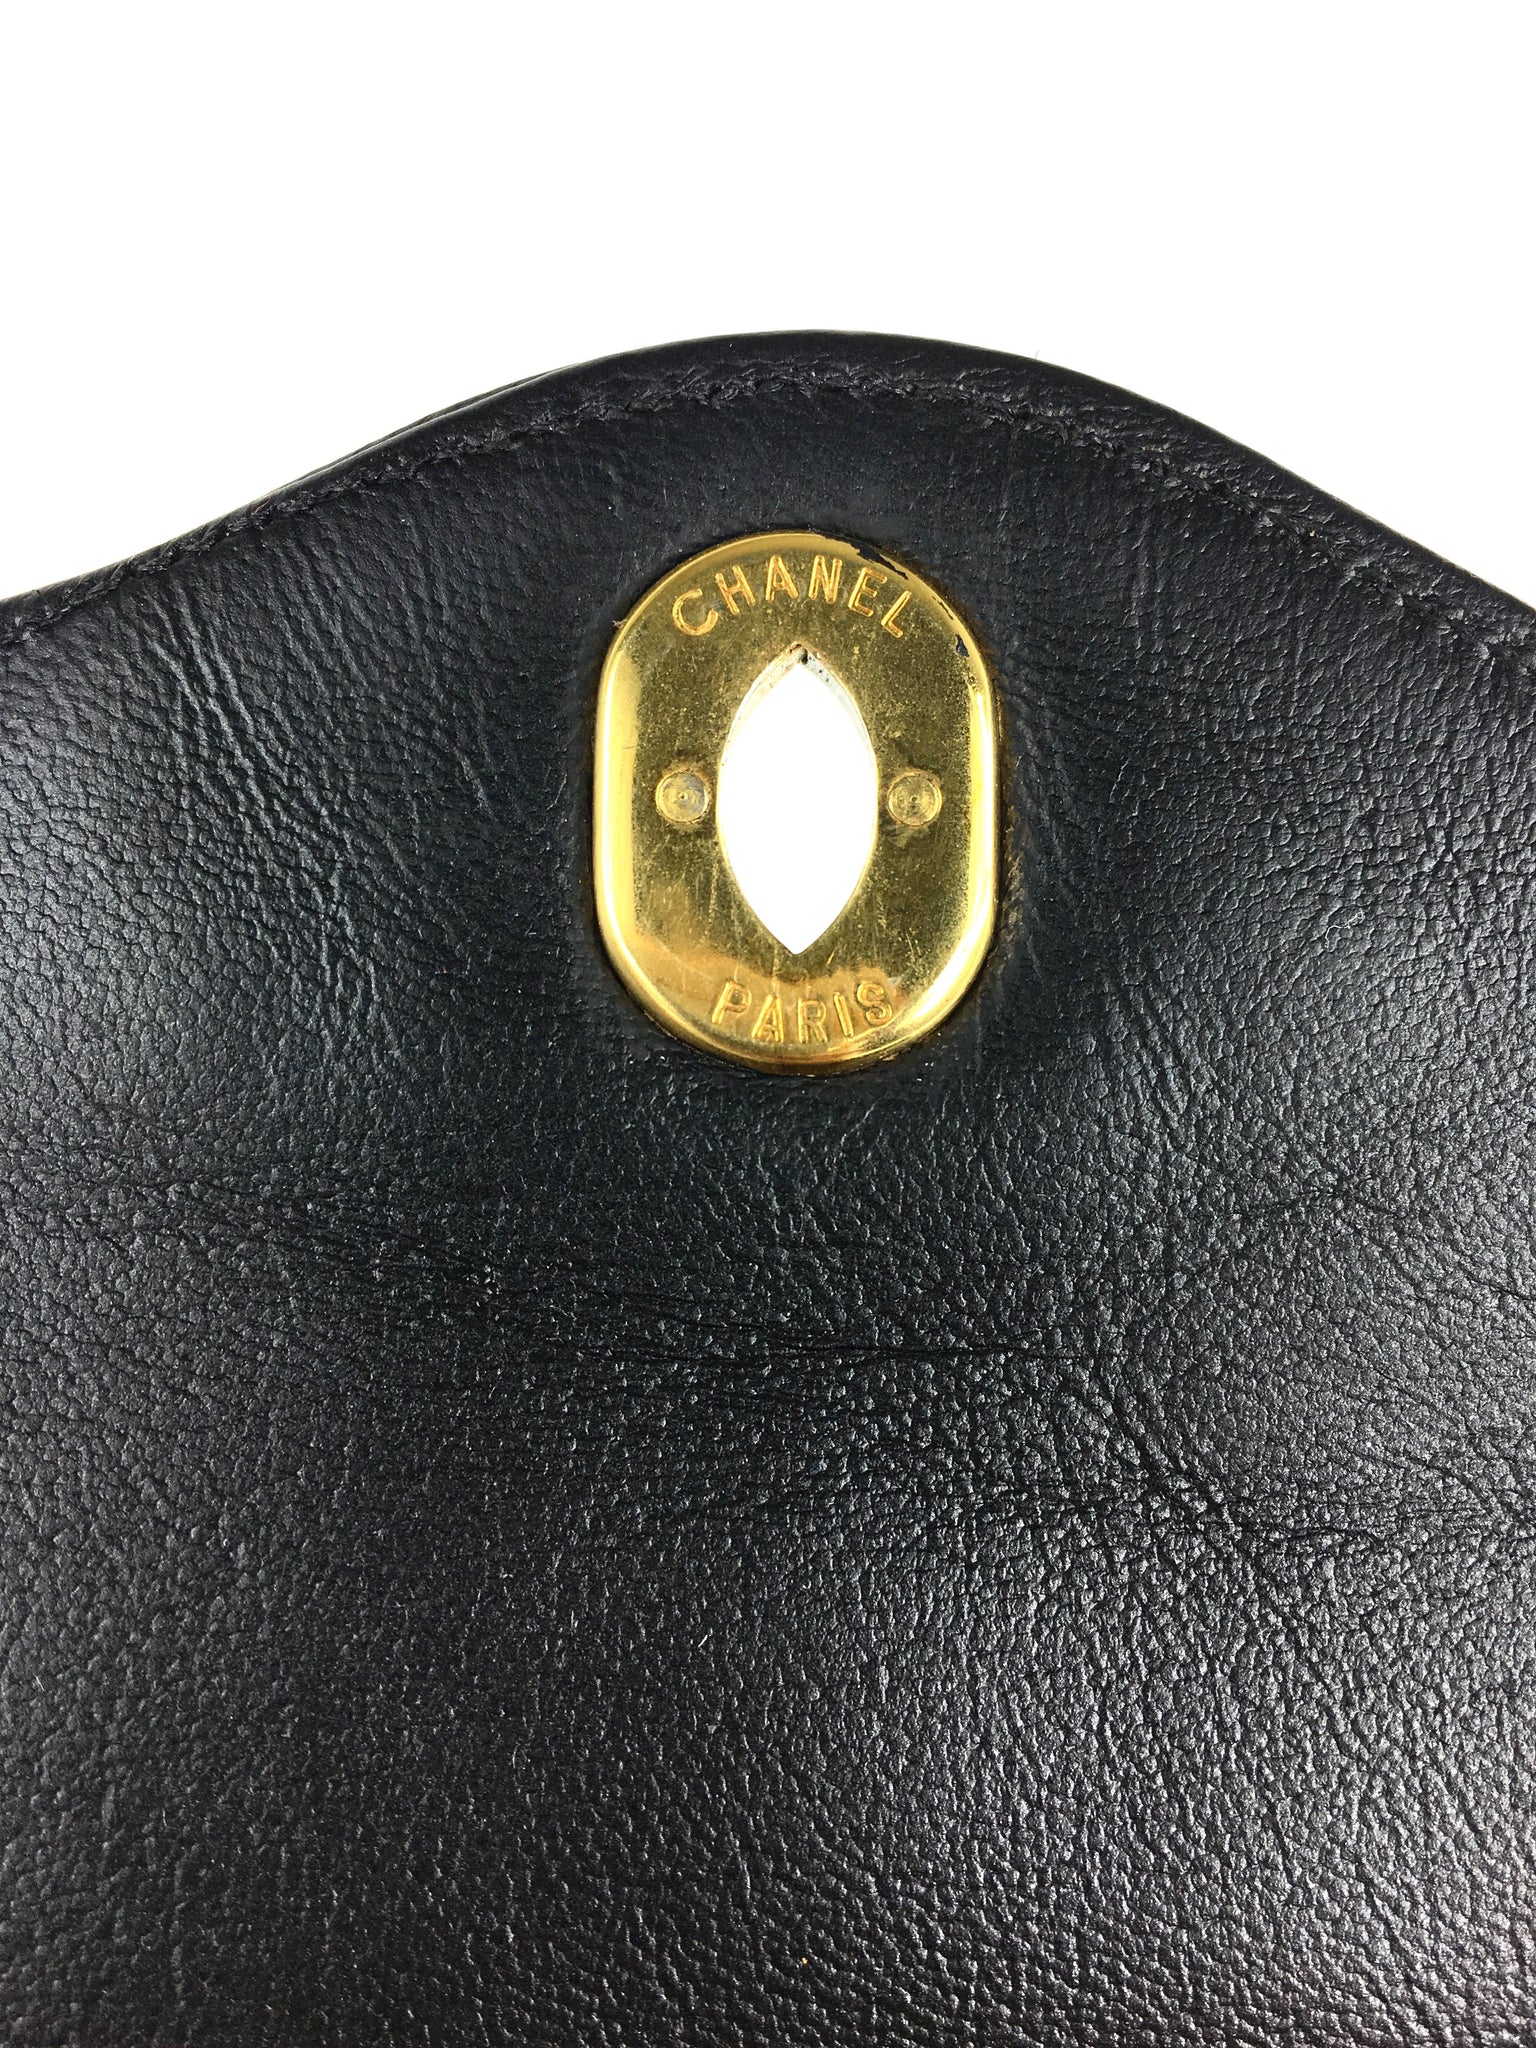 CHANEL Paris Limited Edition 2.55 Double Flap Vintage Bag